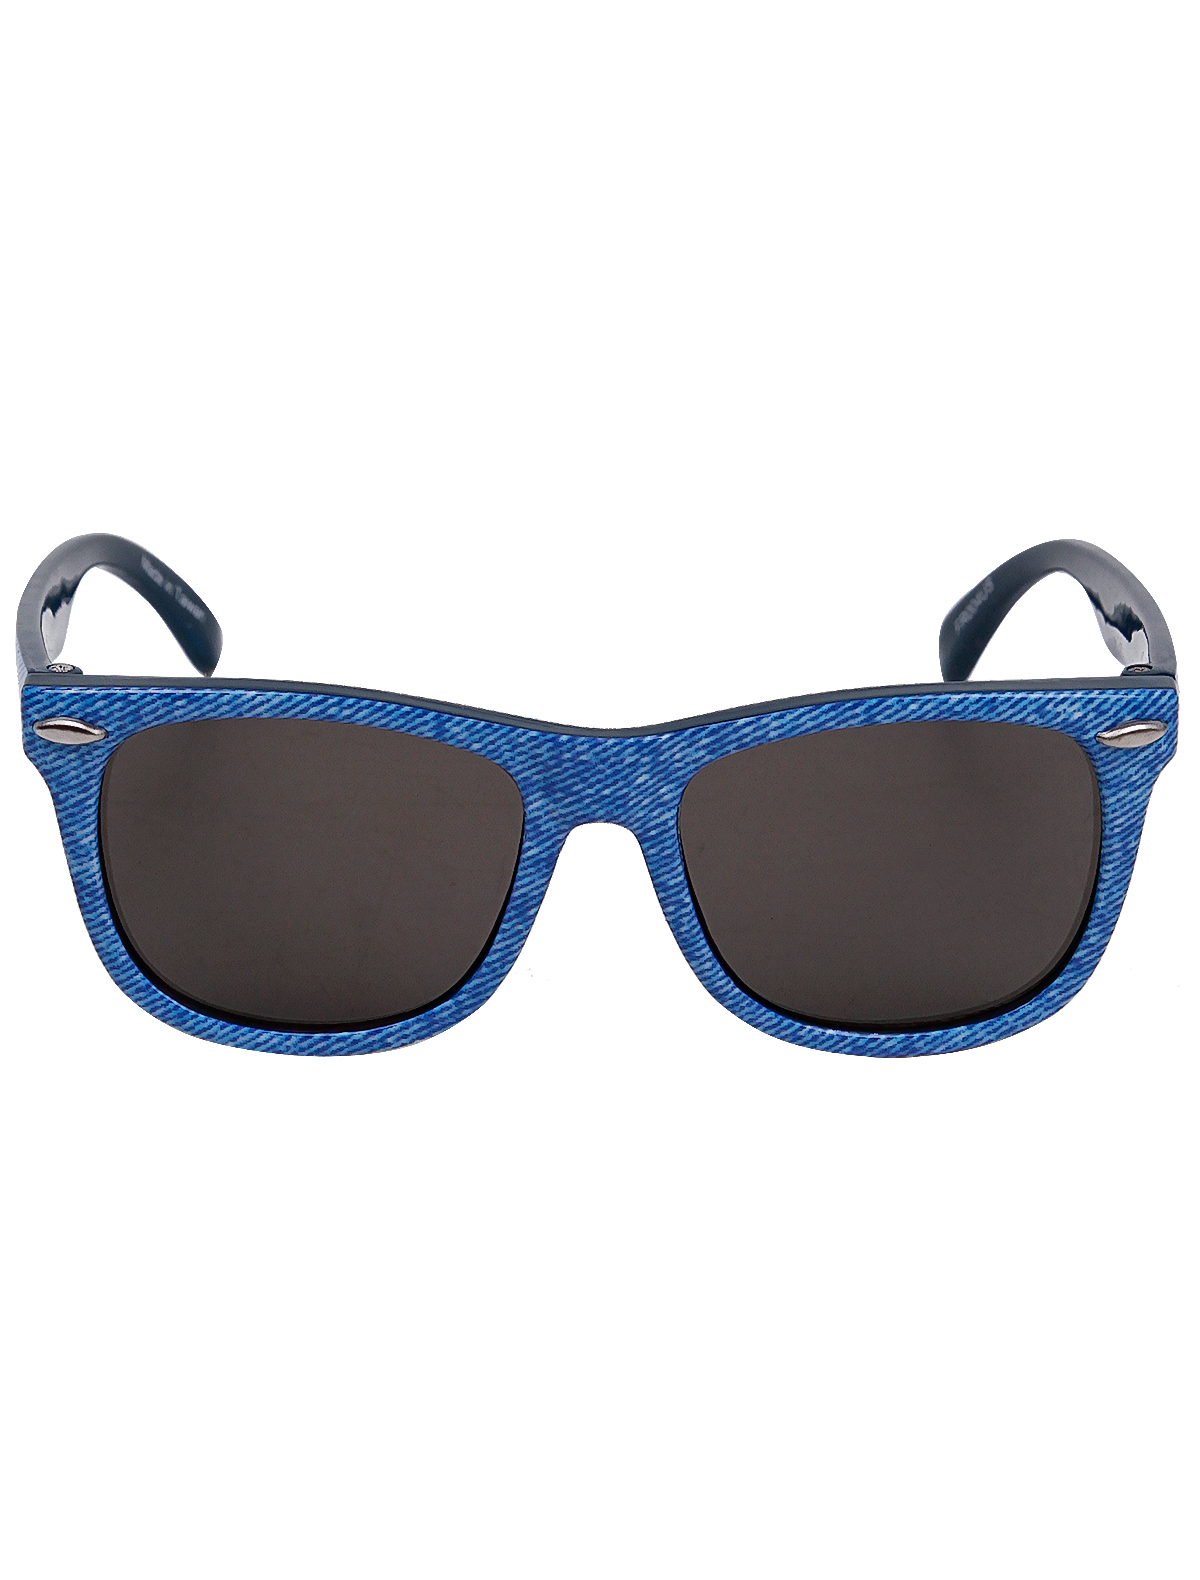 солнцезащитные очки snapper rock малыши, синие